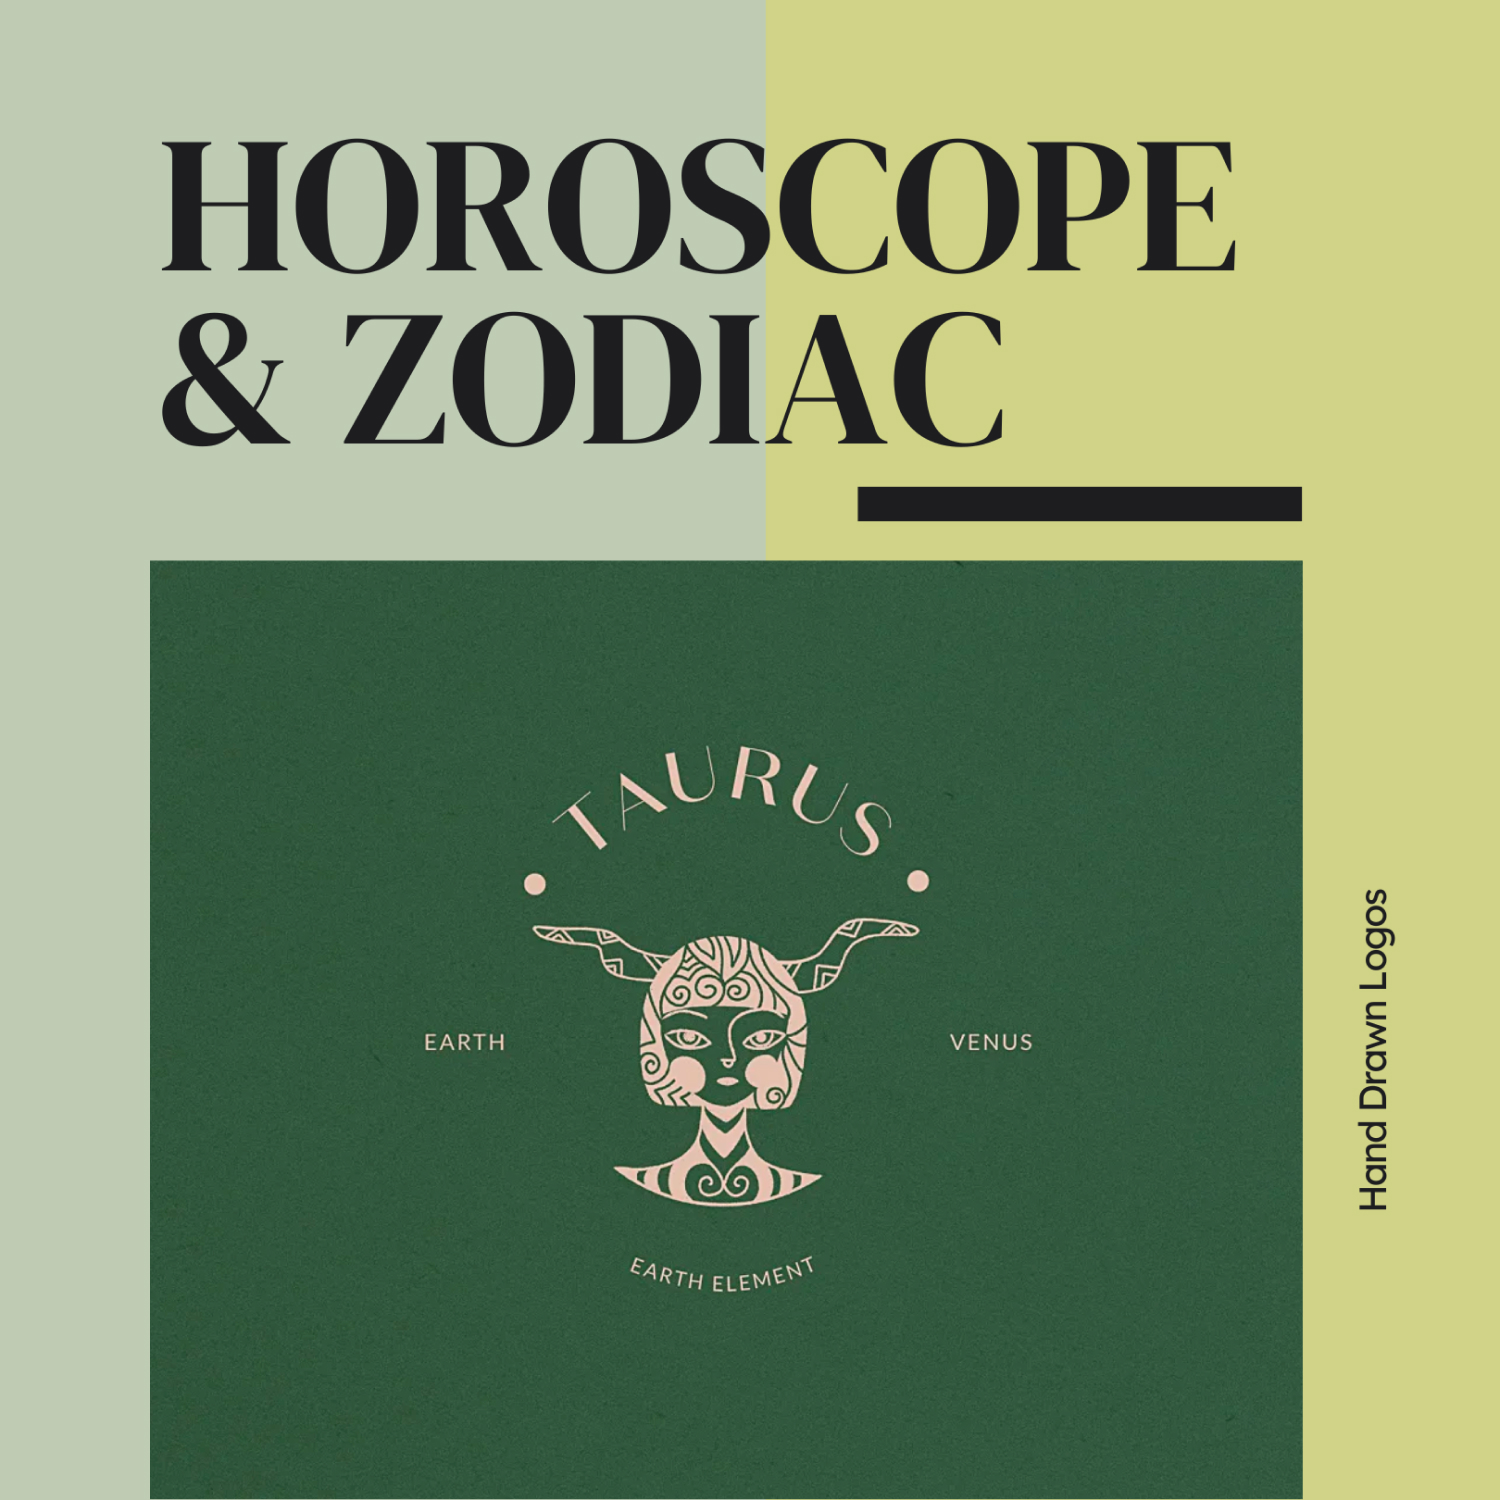 Horoscope & Zodiac Hand Drawn Logos.